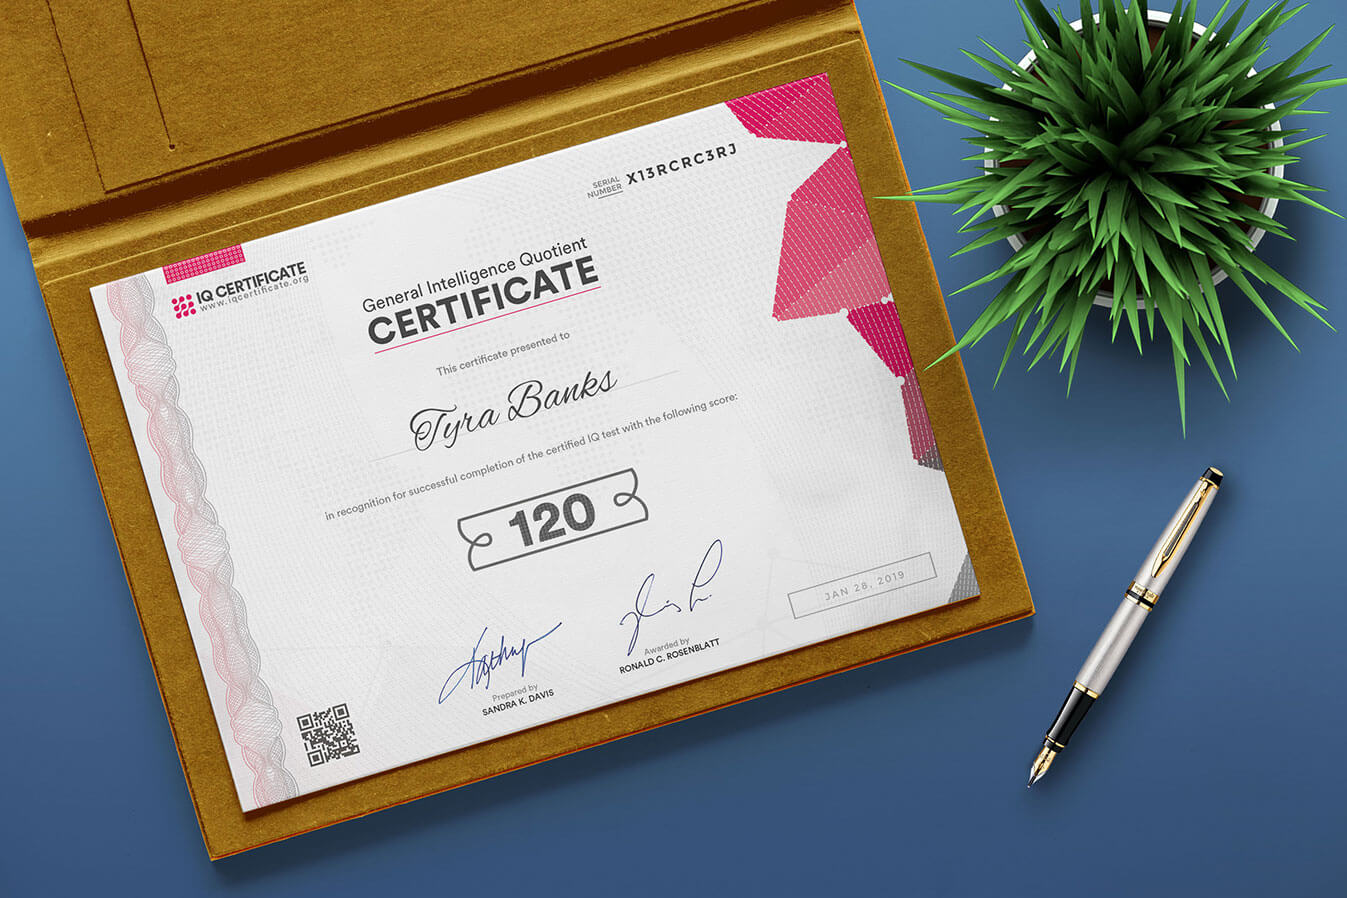 Sample Iq Certificate – Get Your Iq Certificate! With Iq Certificate Template